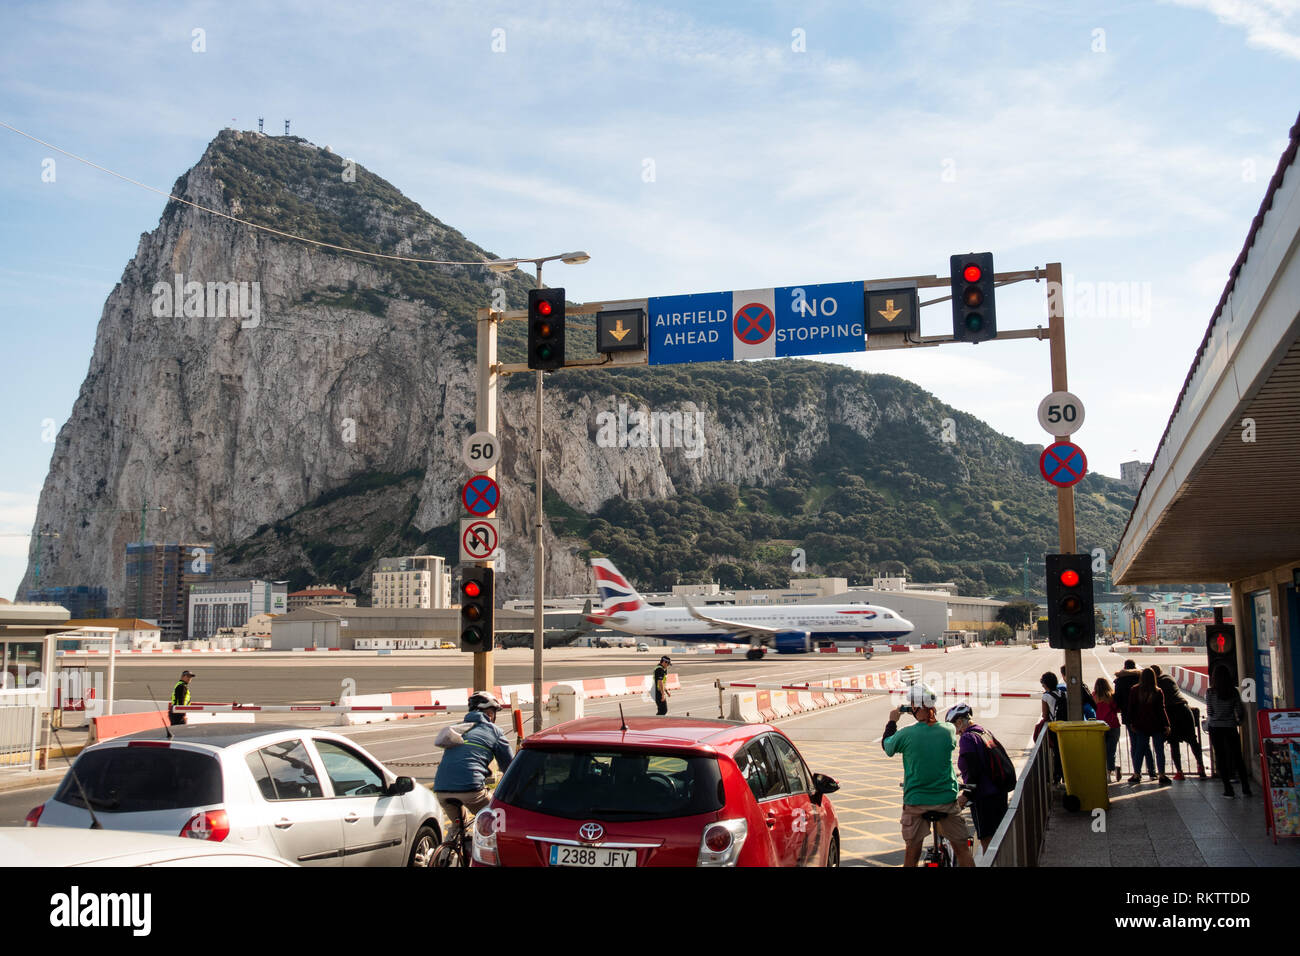 Un Airbus A320 de British Airways décolle sur la route pendant que la circulation et les piétons attendent, au célèbre passage de piste de l'aéroport de Gibraltar Banque D'Images